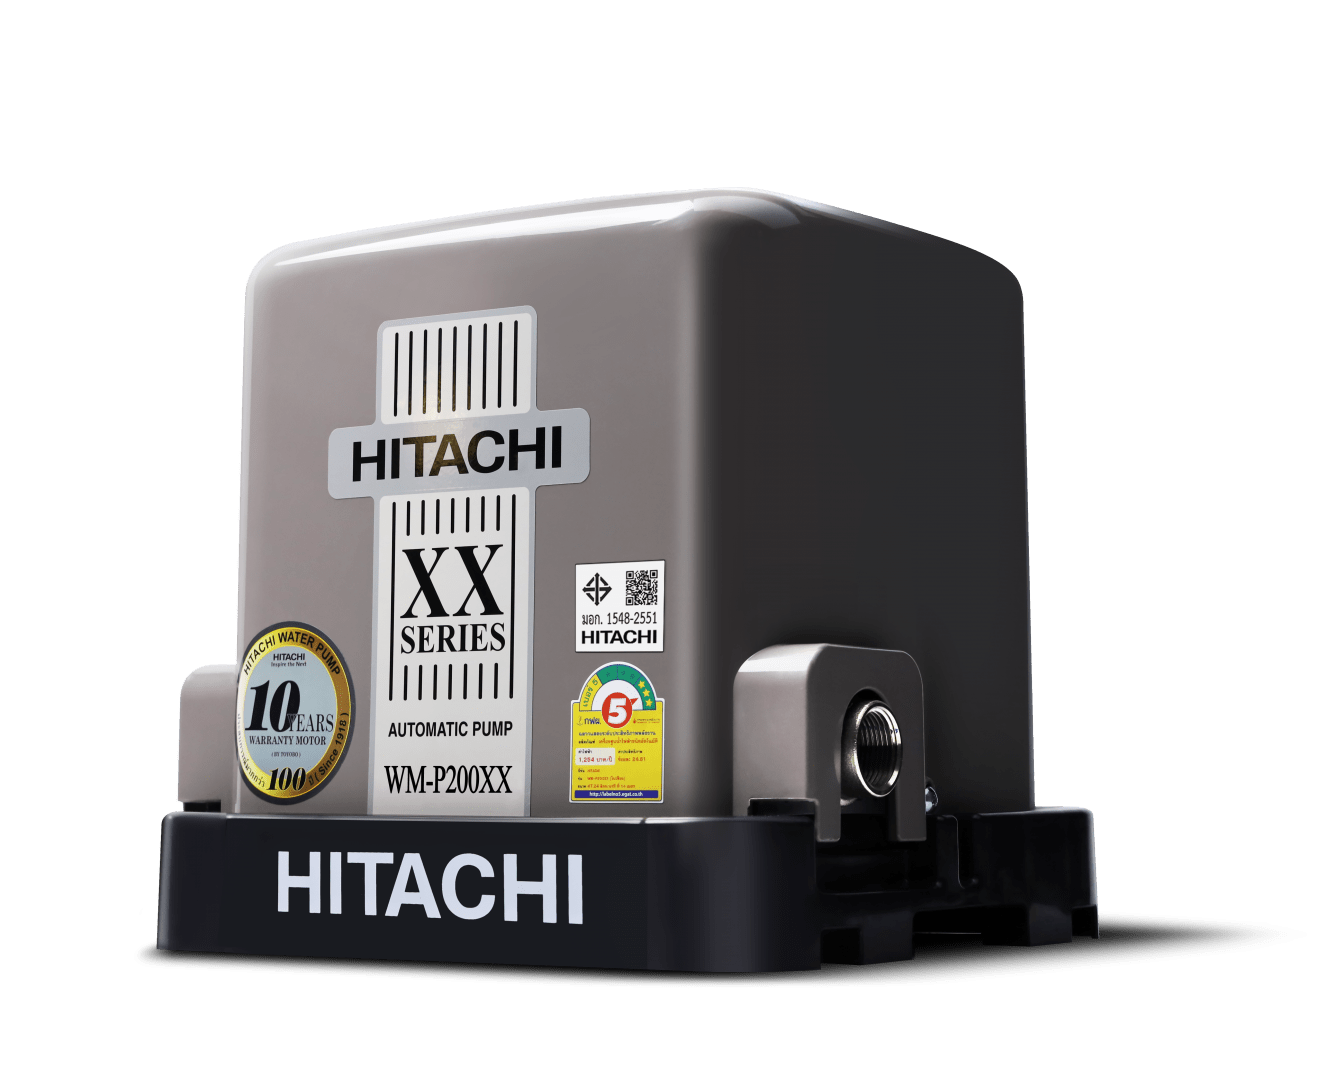 ปั๊มน้ำชนิดแรงดันคงที่ ขนาด 200 วัตต์ HITACHI WM-P200XX